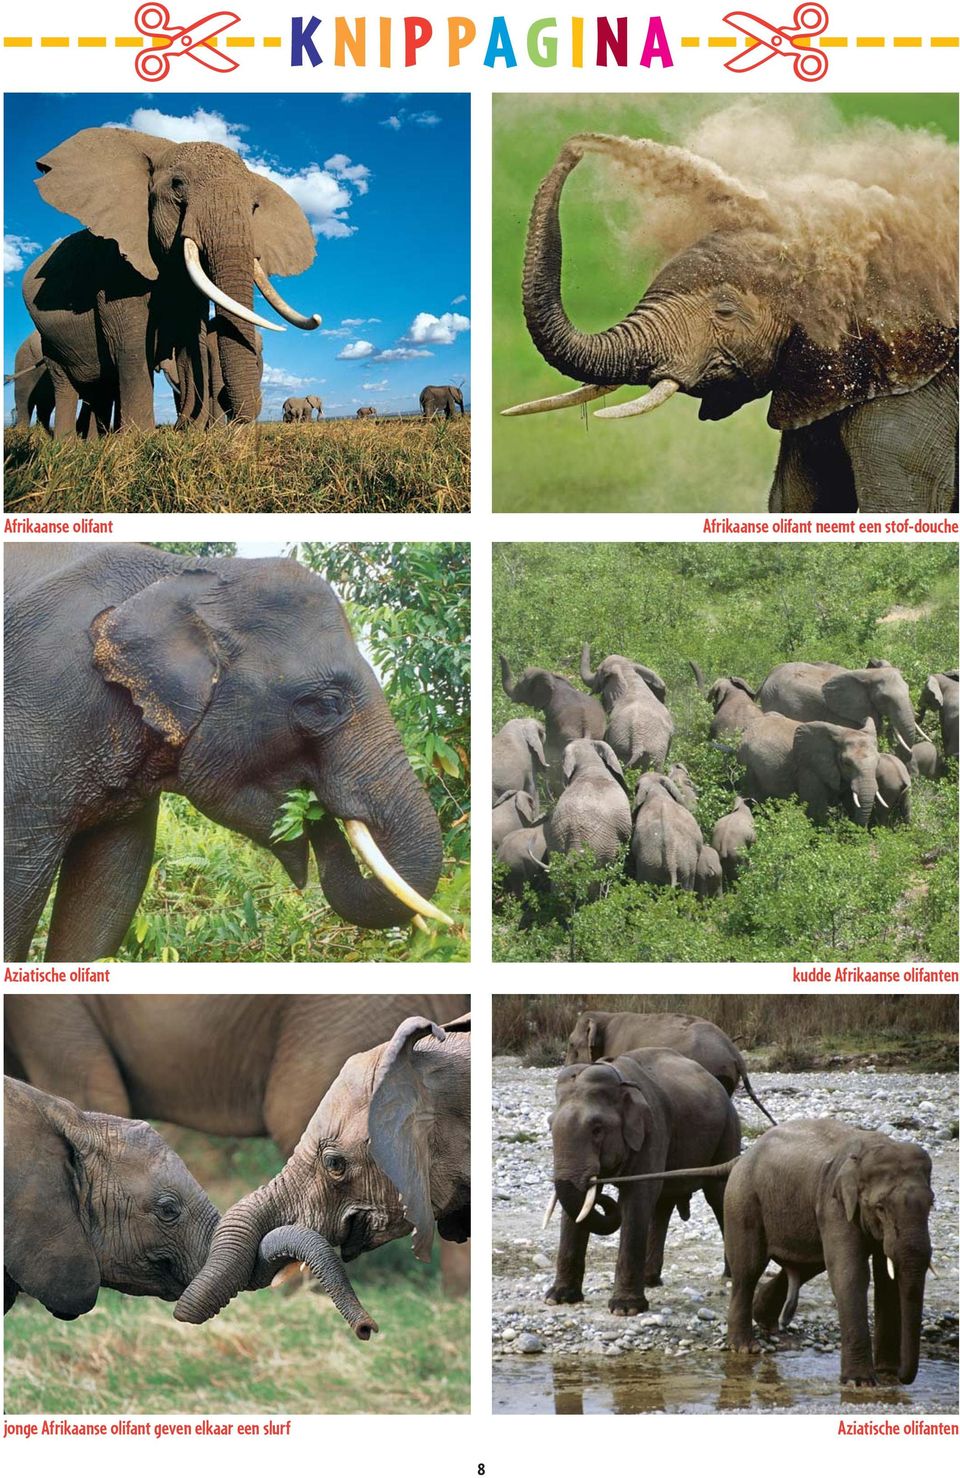 kudde Afrikaanse olifanten jonge Afrikaanse